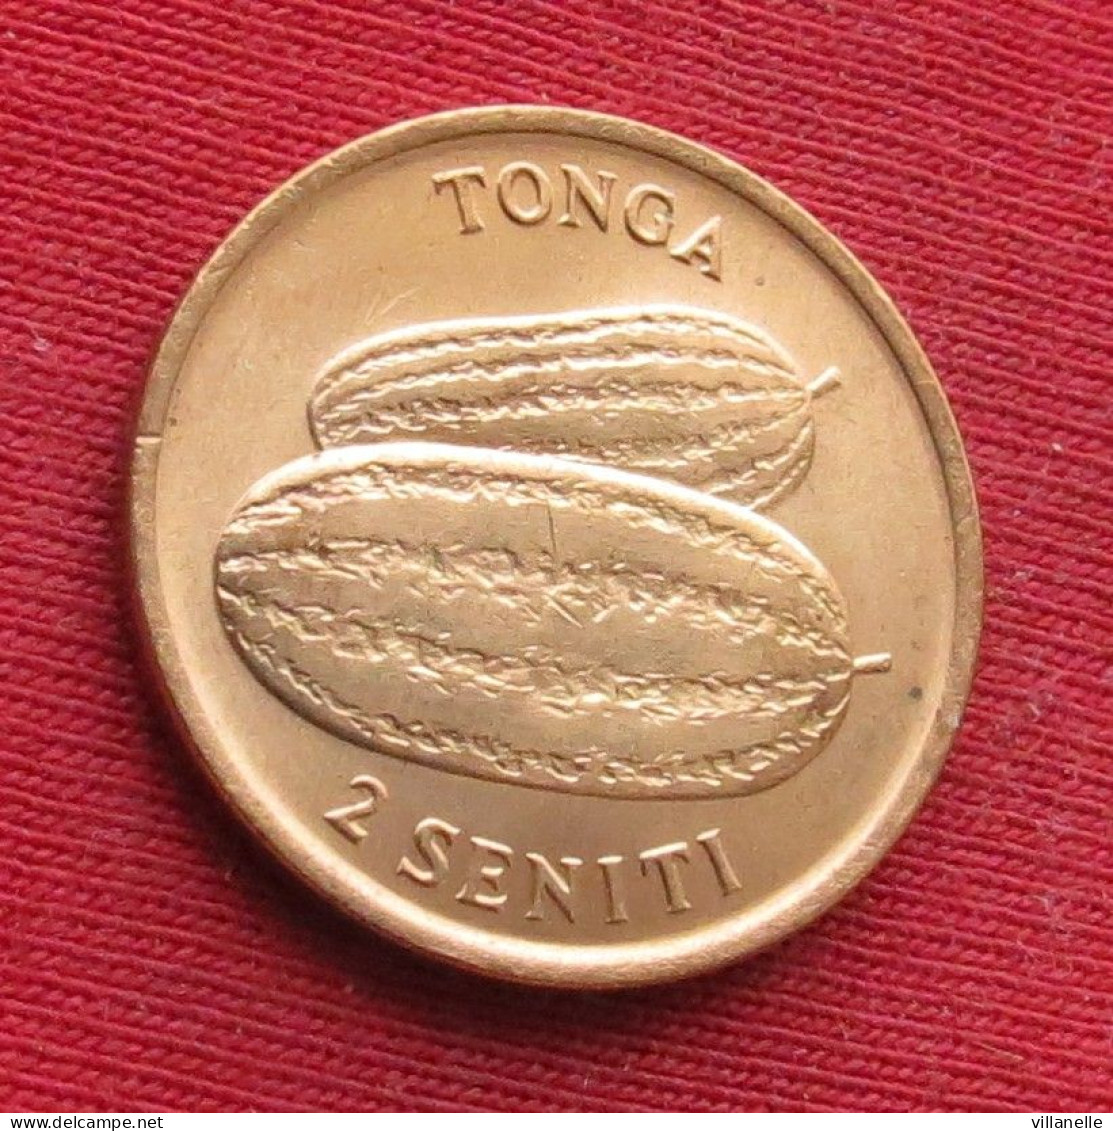 Tonga 2 Seniti 1975 Fao F.a.o. UNC ºº - Tonga